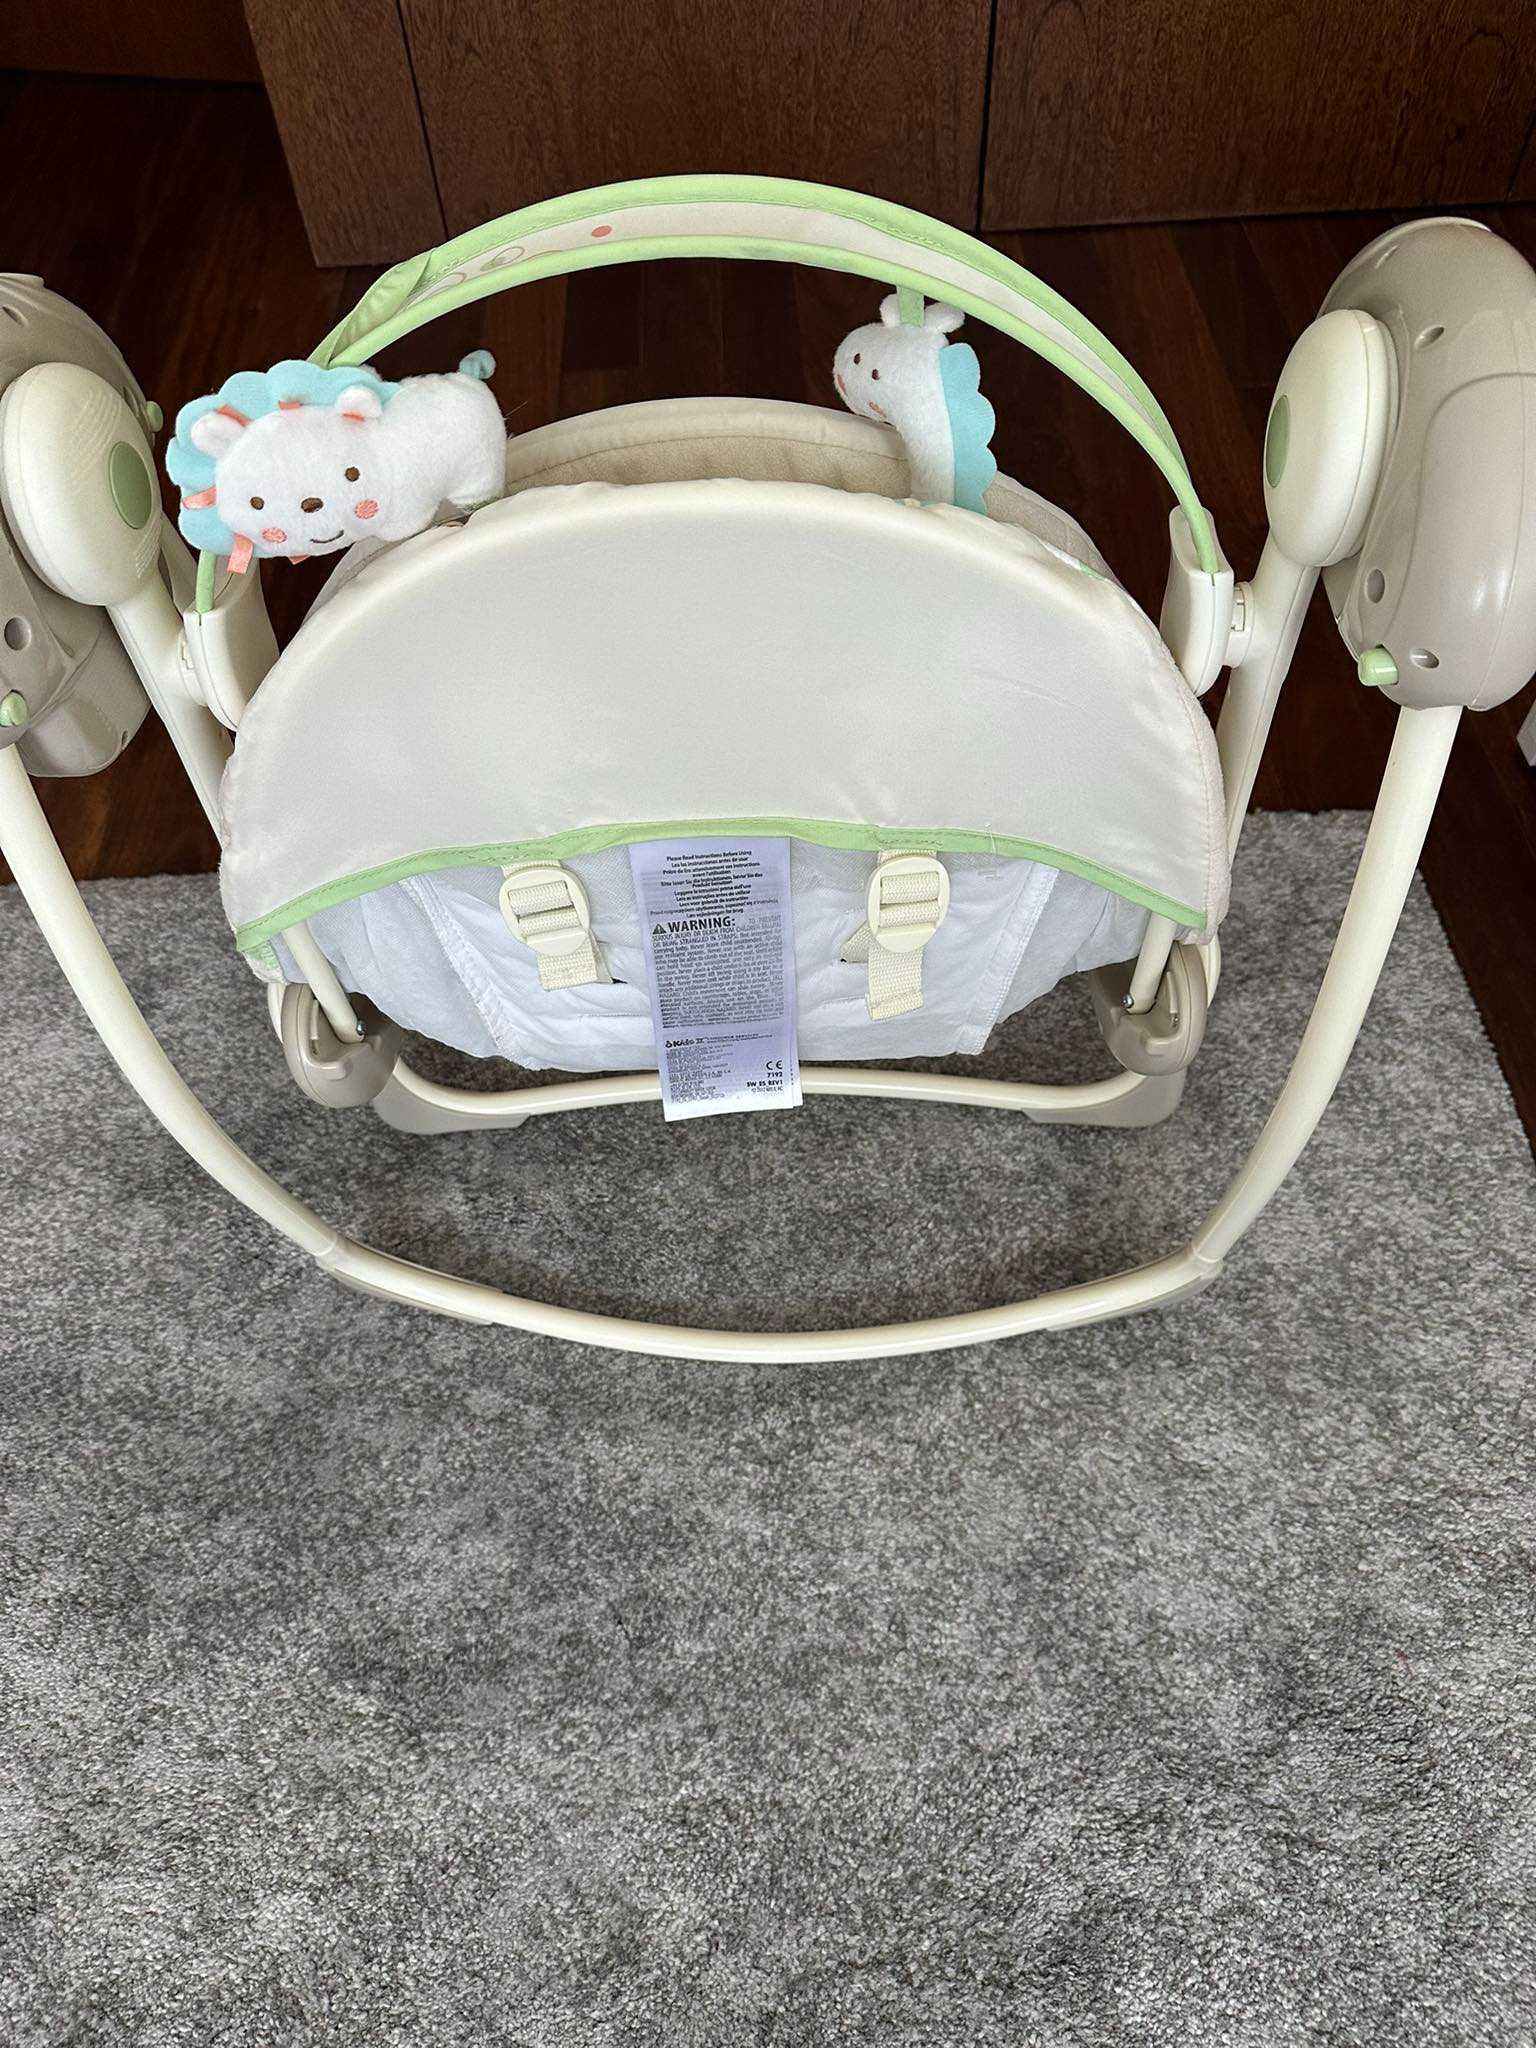 Espreguiçadeira de bébé (baloiço automático com música)